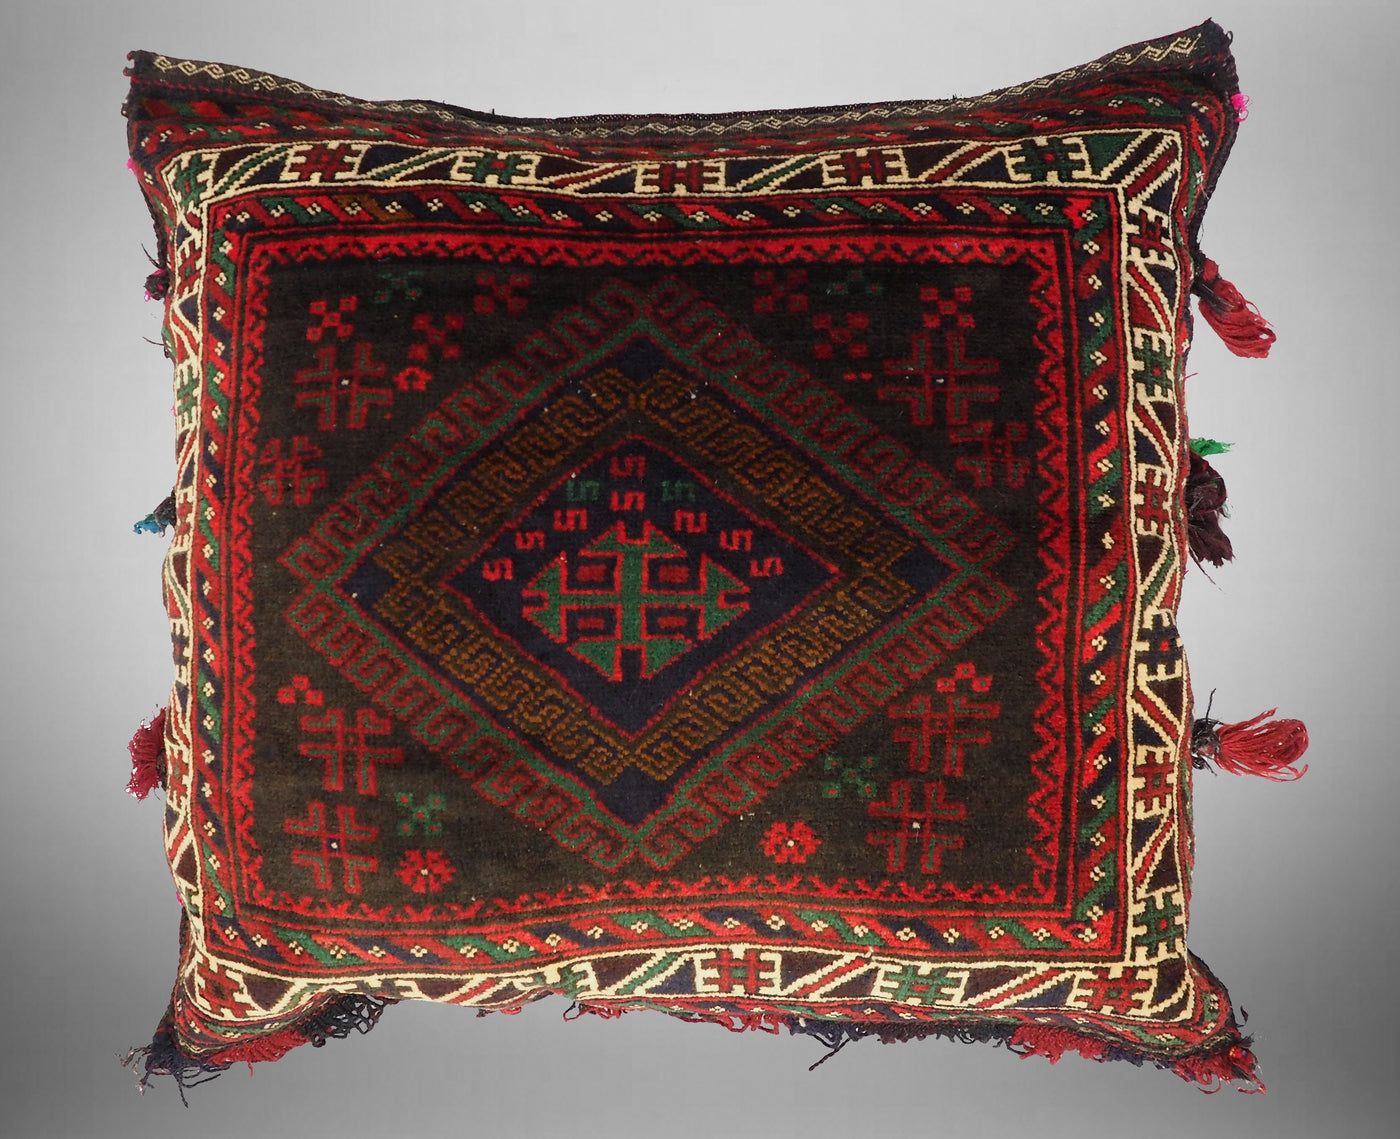 80x75 cm orient Teppich nomaden sitzkissen bodenkissen cushion Inkl Füllung 21/1  Orientsbazar   